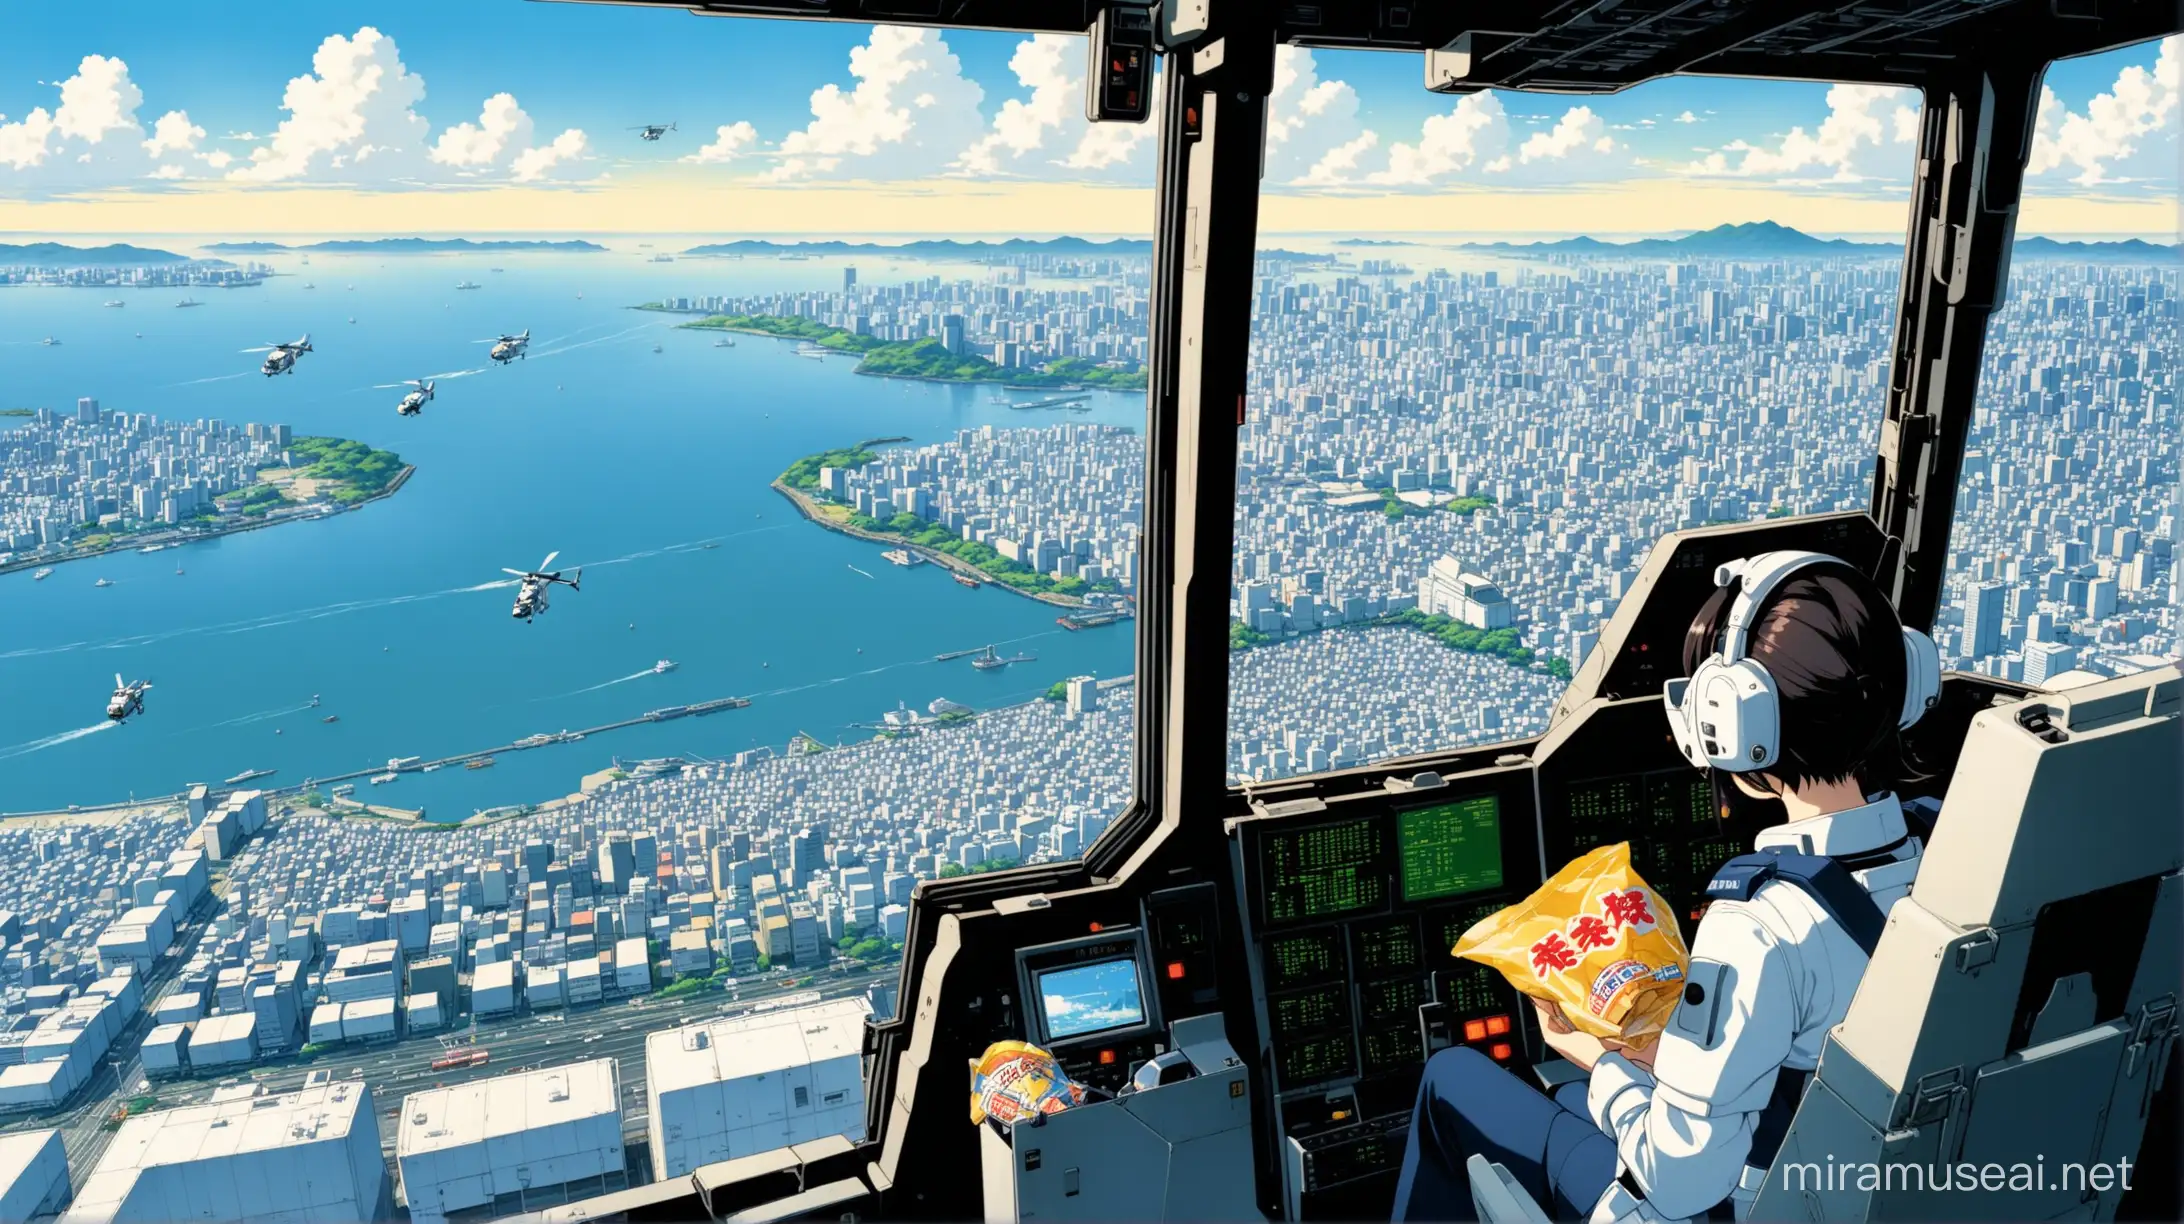 patlabor, noa izumi, inside helecopter, tokyo bay below, holding bag of chips